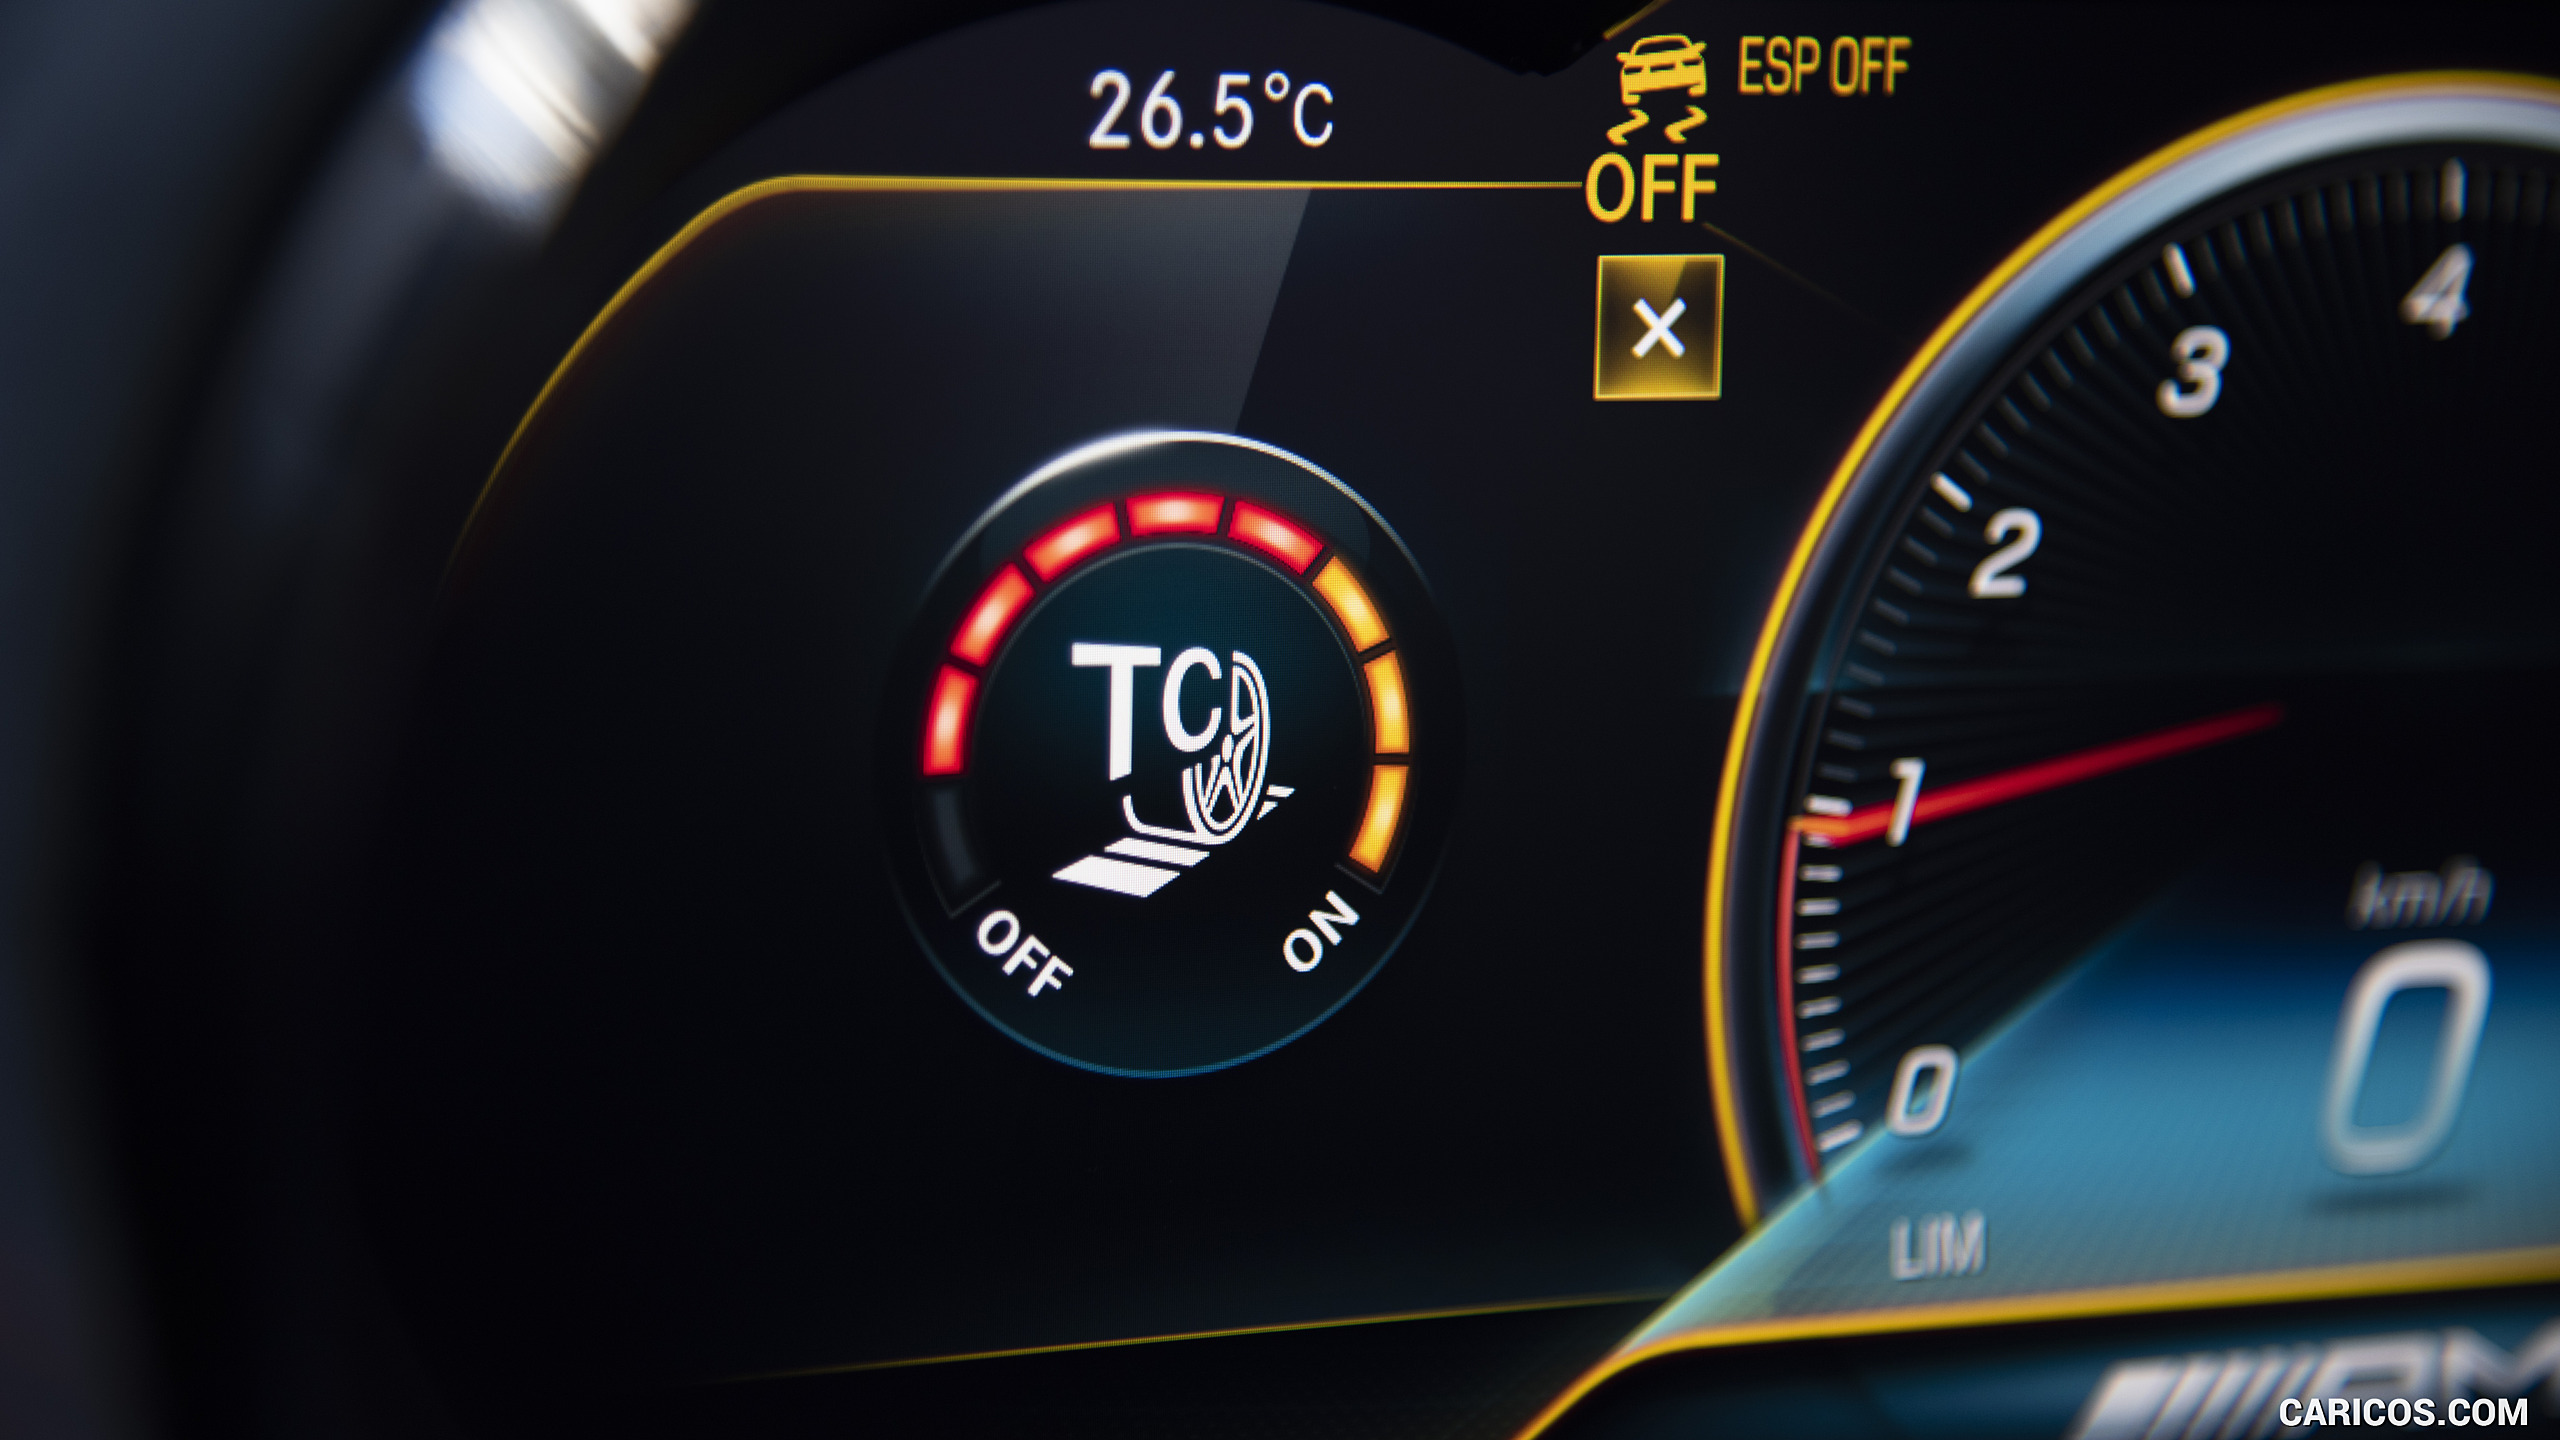 2021 Mercedes-AMG GT Black Series - Digital Instrument Cluster, #196 of 215